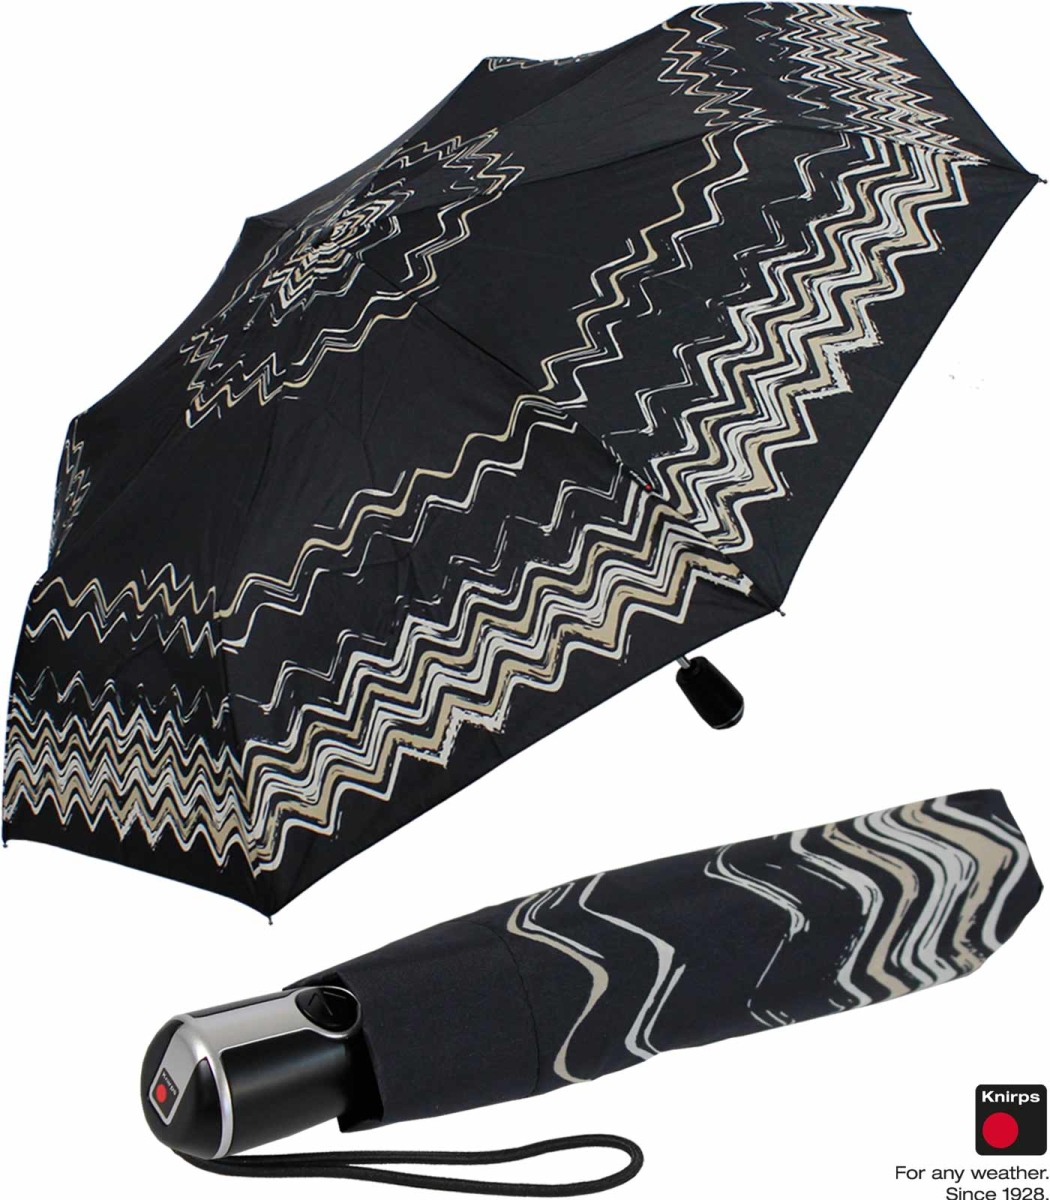 € Knirps floripa 34,99 Large black mit Regenschirm Duomatic Taschenschirm UV-,